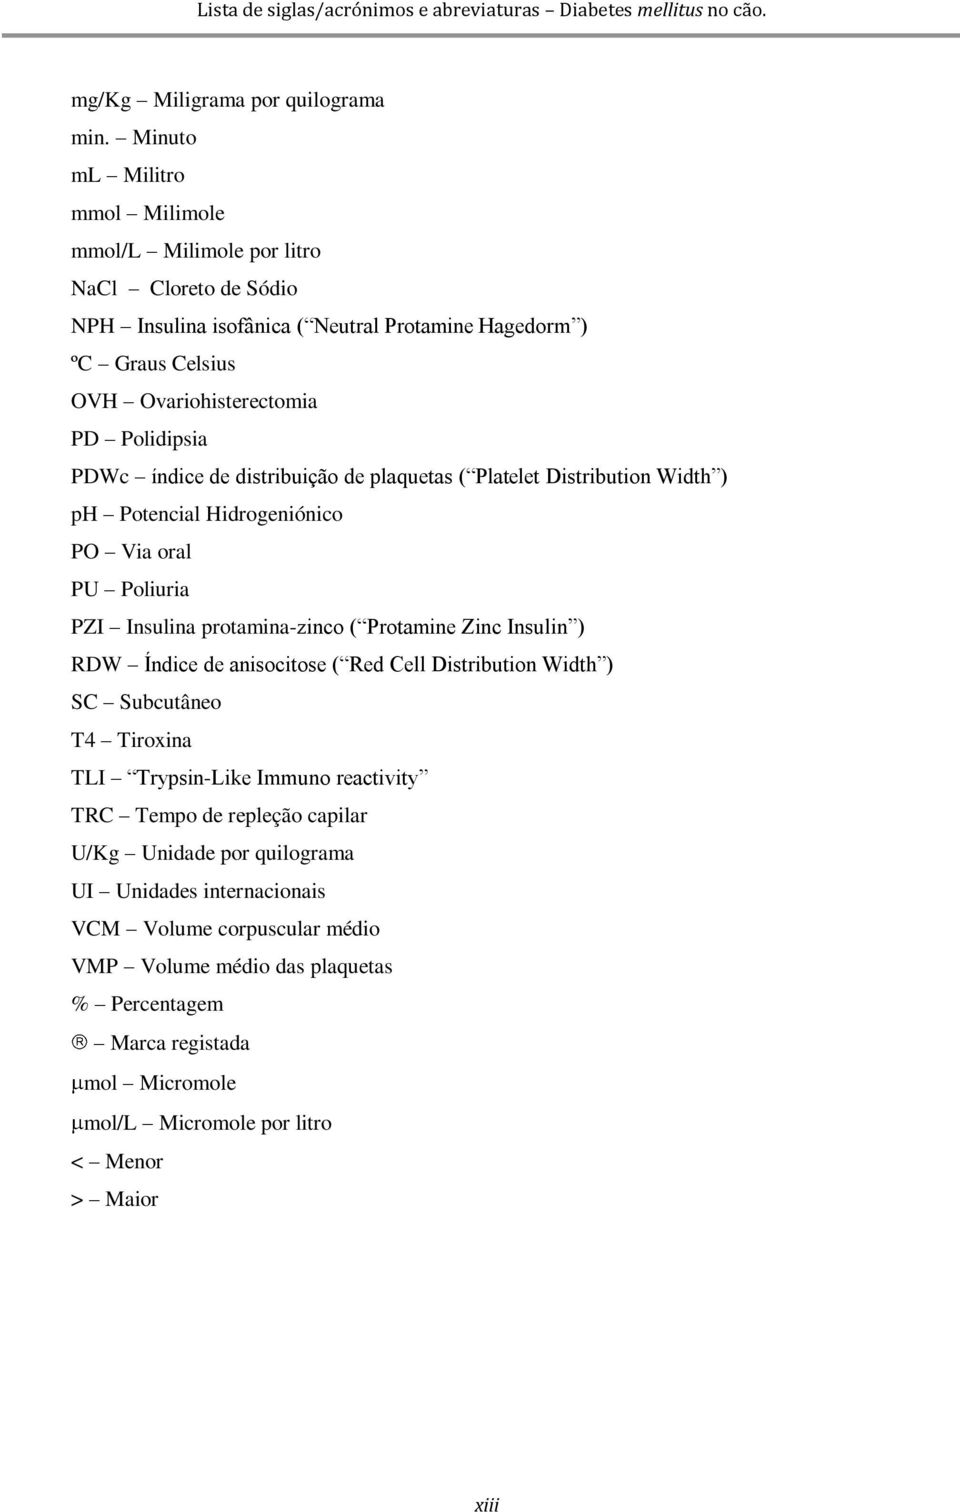 índice de distribuição de plaquetas ( Platelet Distribution Width ) ph Potencial Hidrogeniónico PO Via oral PU Poliuria PZI Insulina protamina-zinco ( Protamine Zinc Insulin ) RDW Índice de